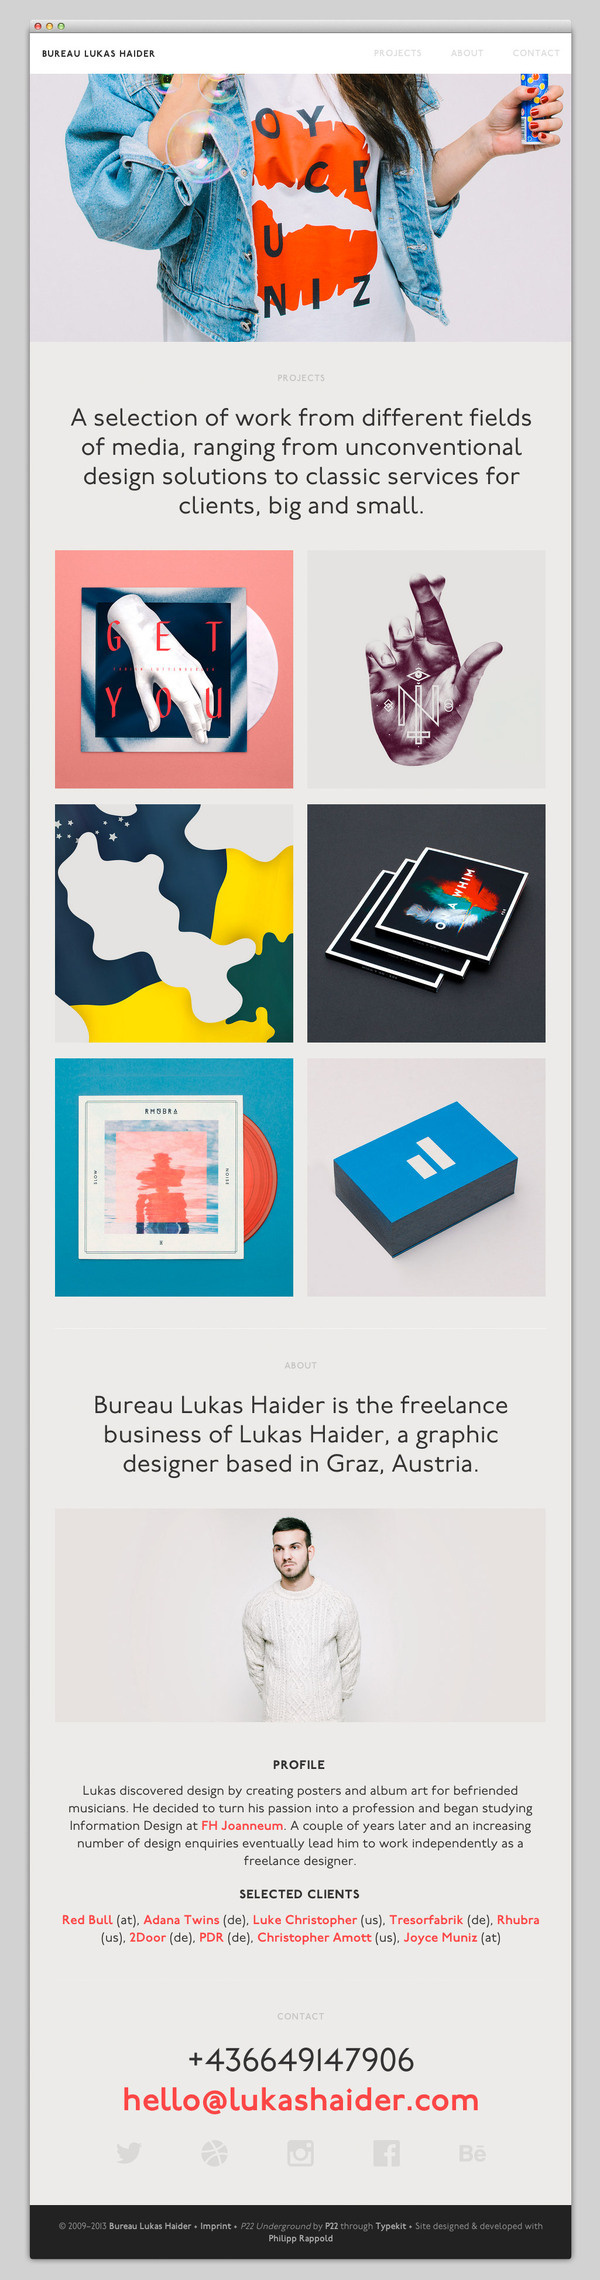 Bureau Lukas Haider #design #website #layout #web #newsletter